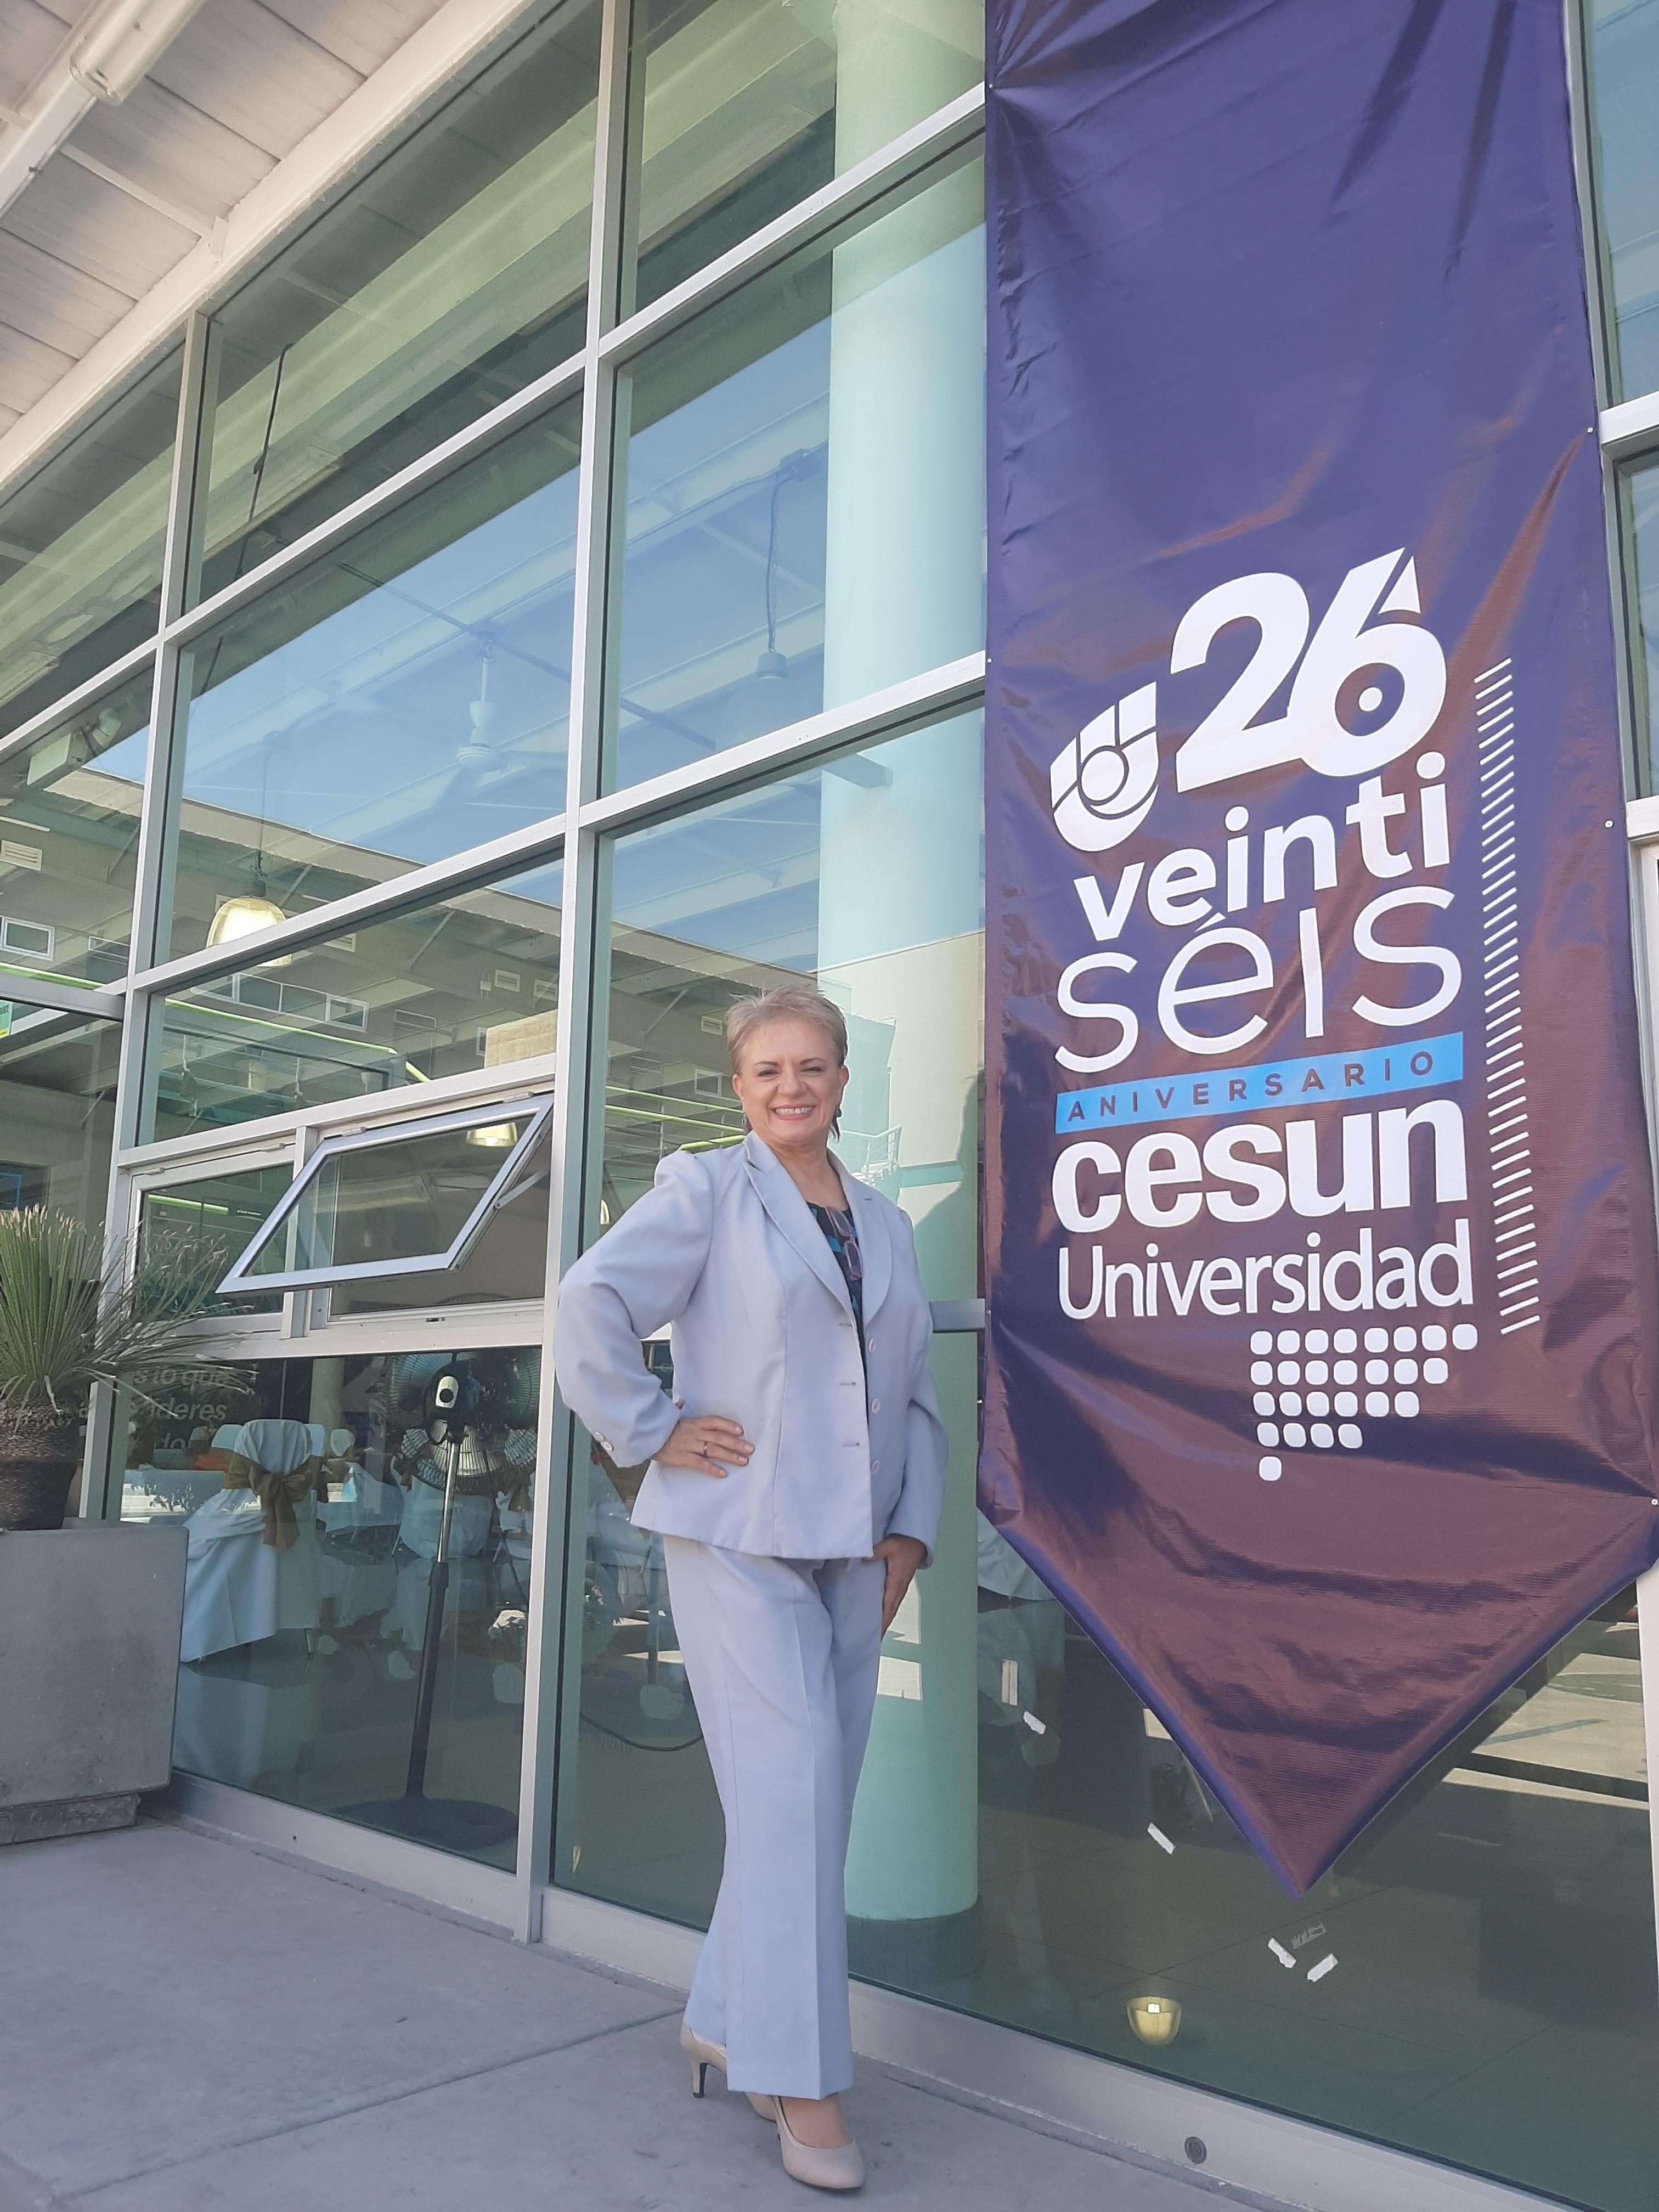 Celebración del 26 aniversario de Cesun Universidad